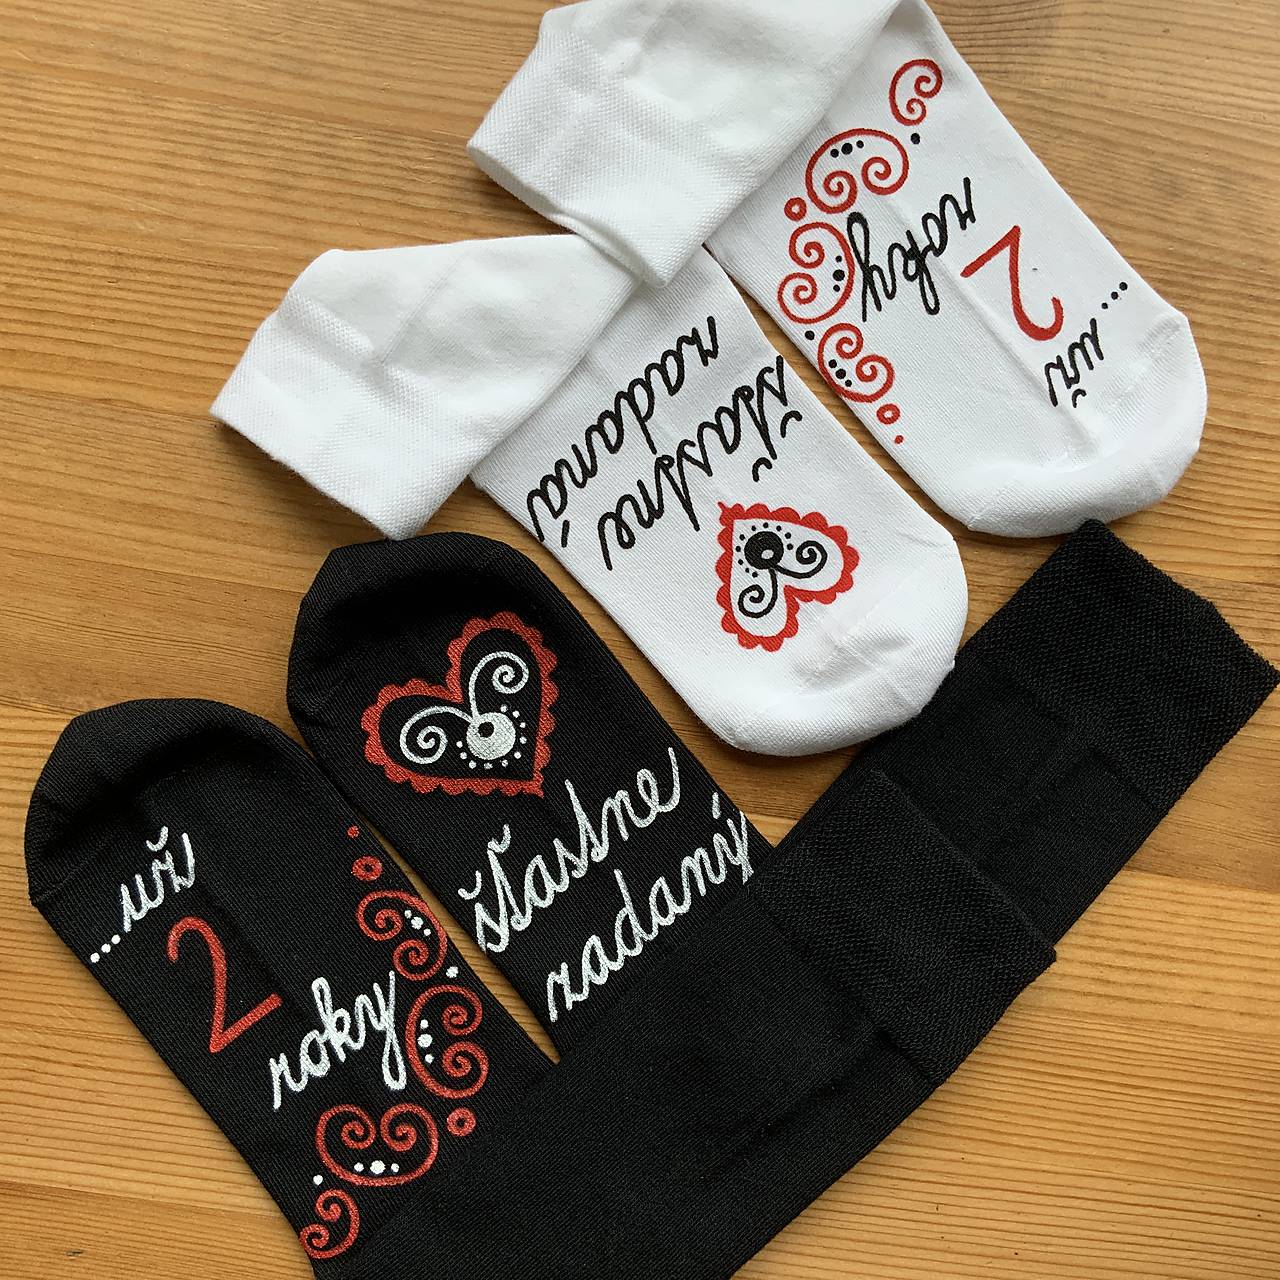 Maľované folk ponožky k výročiu svadby (biele + čierne)